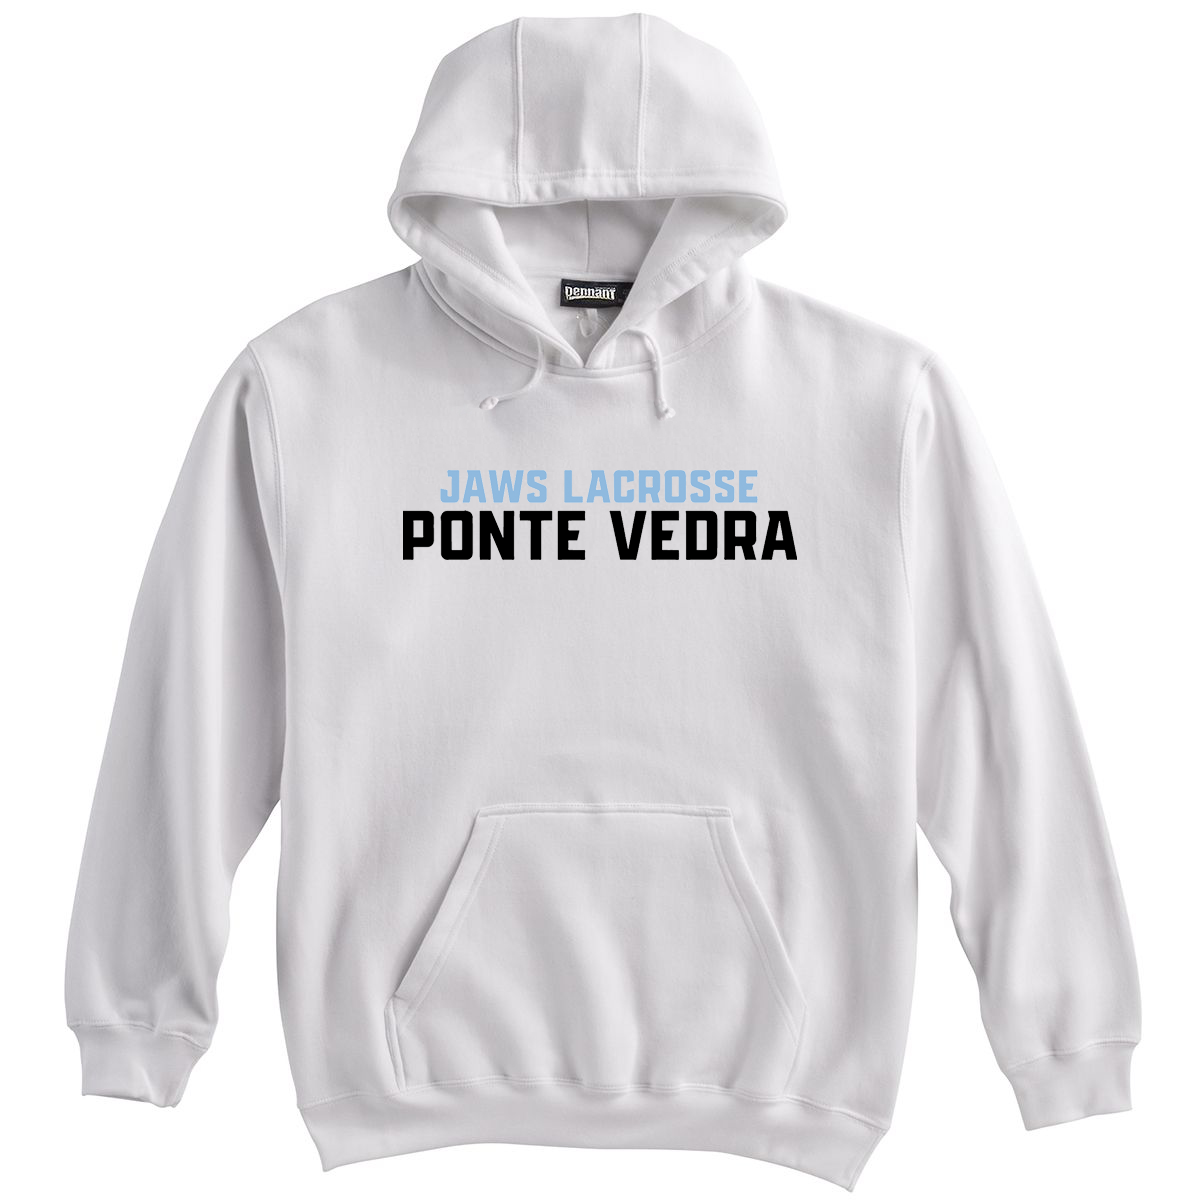 Ponte Vedra JAWS Lacrosse Sweatshirt